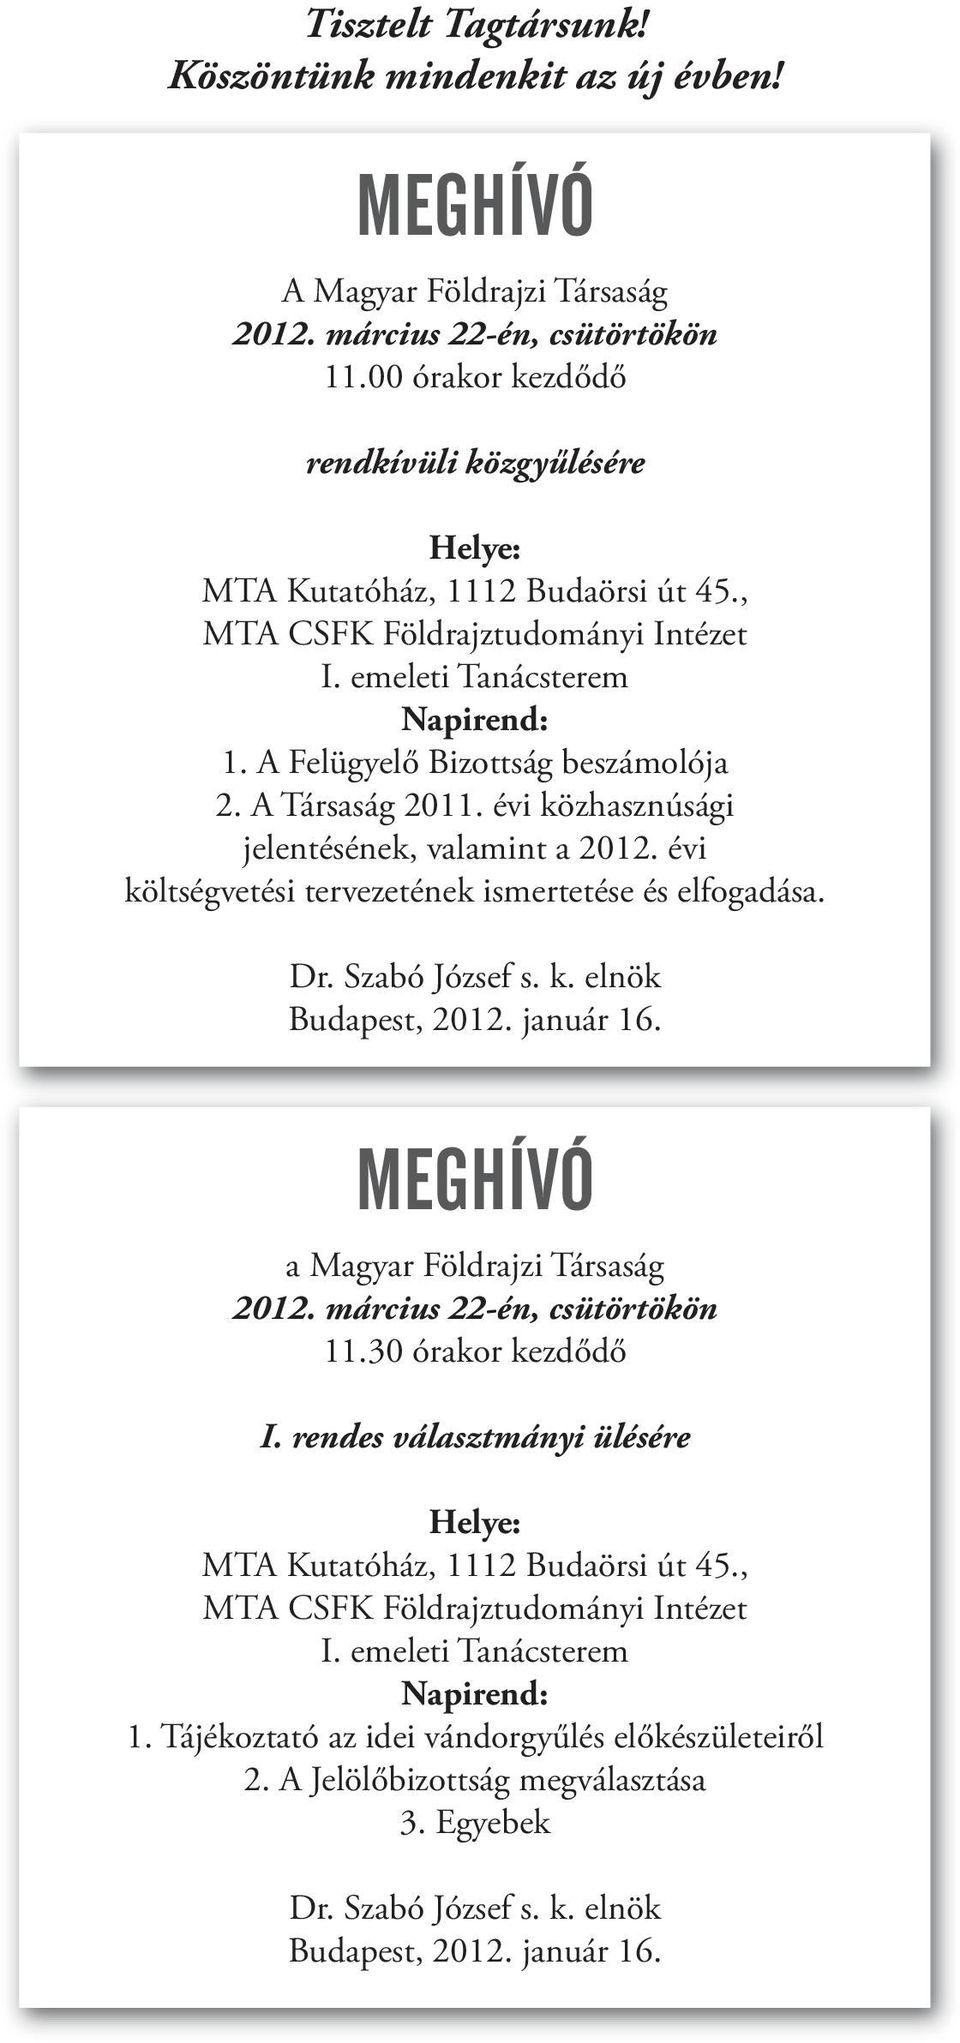 A Társaság 2011. évi közhasznúsági jelentésének, valamint a 2012. évi költségvetési tervezetének ismertetése és elfogadása. Dr. Szabó József s. k. elnök Budapest, 2012. január 16.